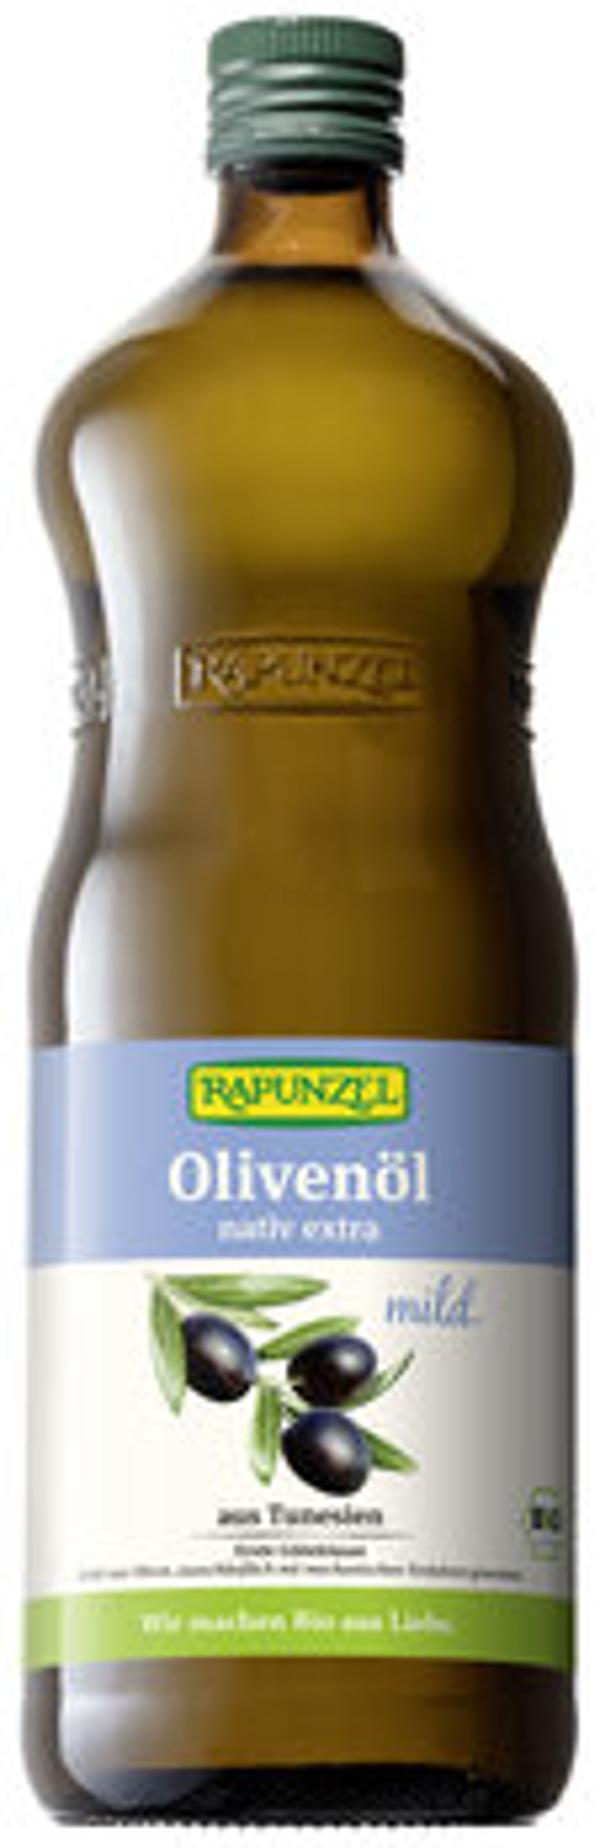 Produktfoto zu Olivenöl nativ extra mild, 1 l